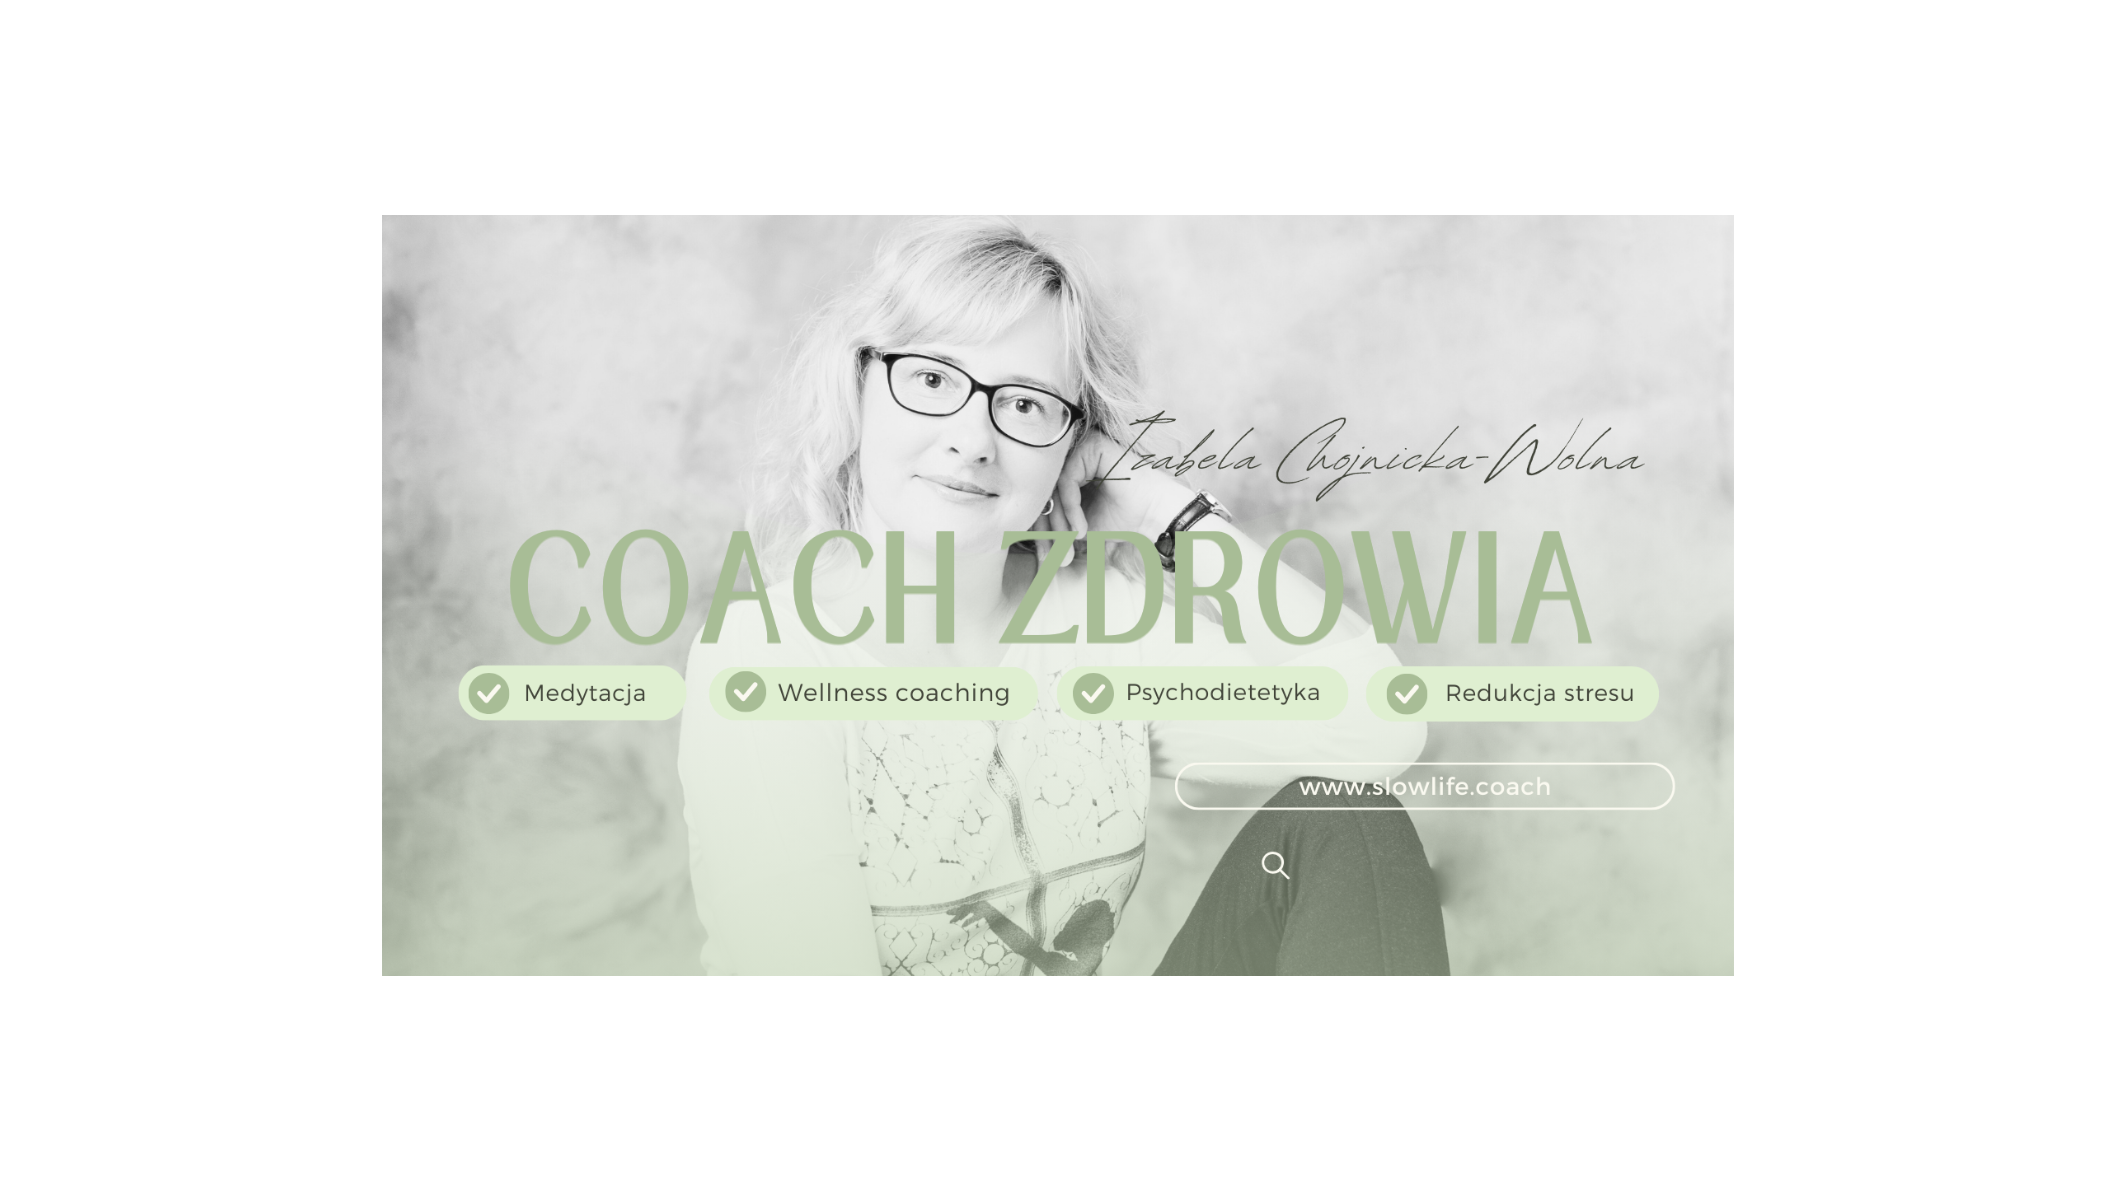 Images Psychodietetyka i Coaching Zdrowia Izabela Chojnicka-Wolna